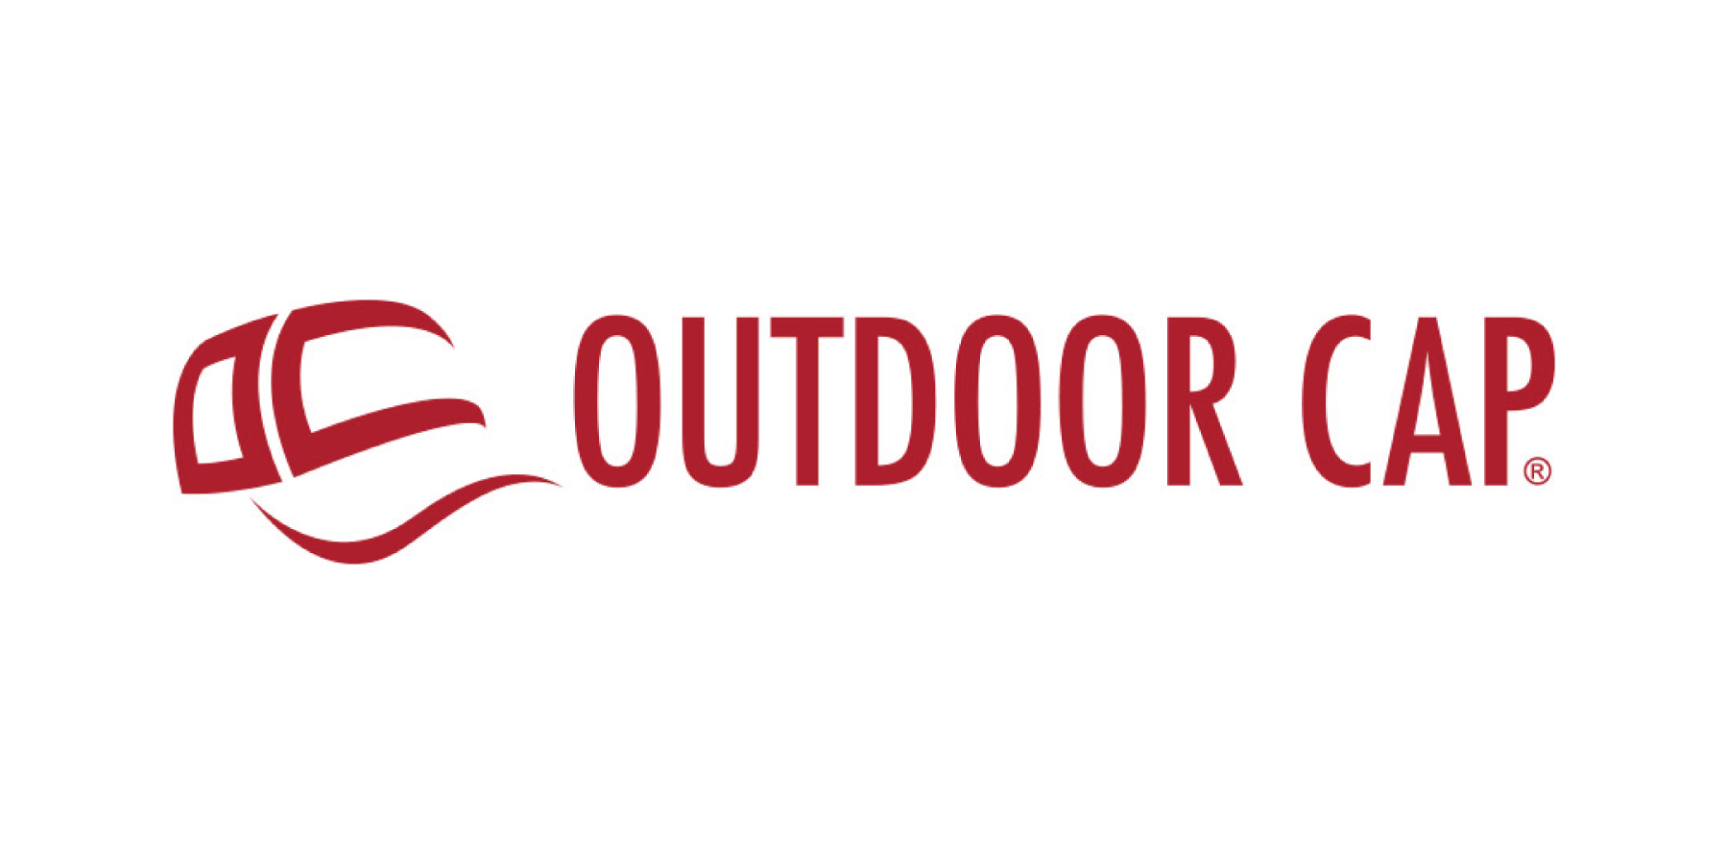 Outdoor cap logo